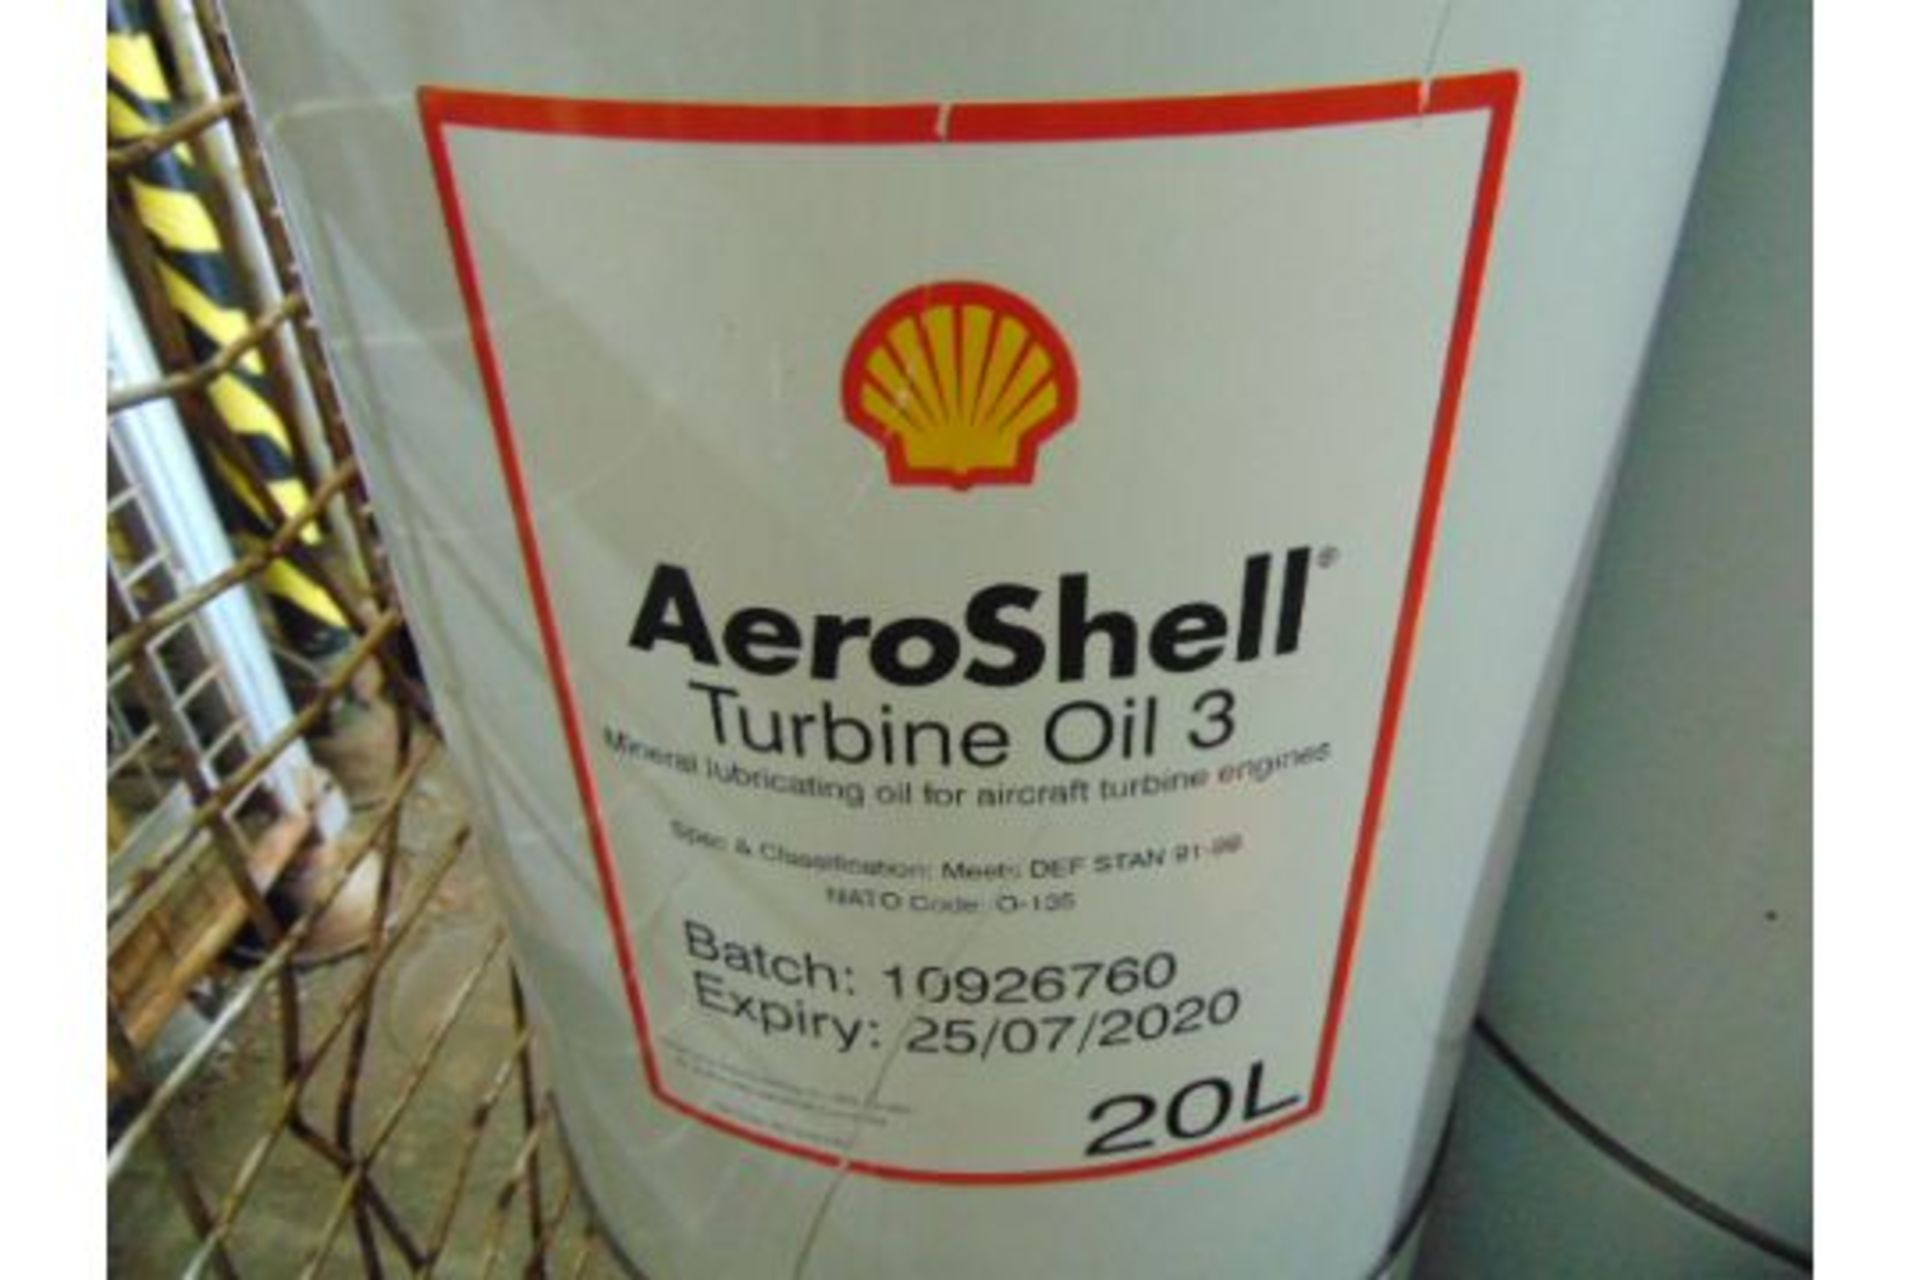 8 x Unissued 20L Drums of Aeroshell Turbine Oil 3 Mineral Based Lubricating Oil - Image 2 of 2